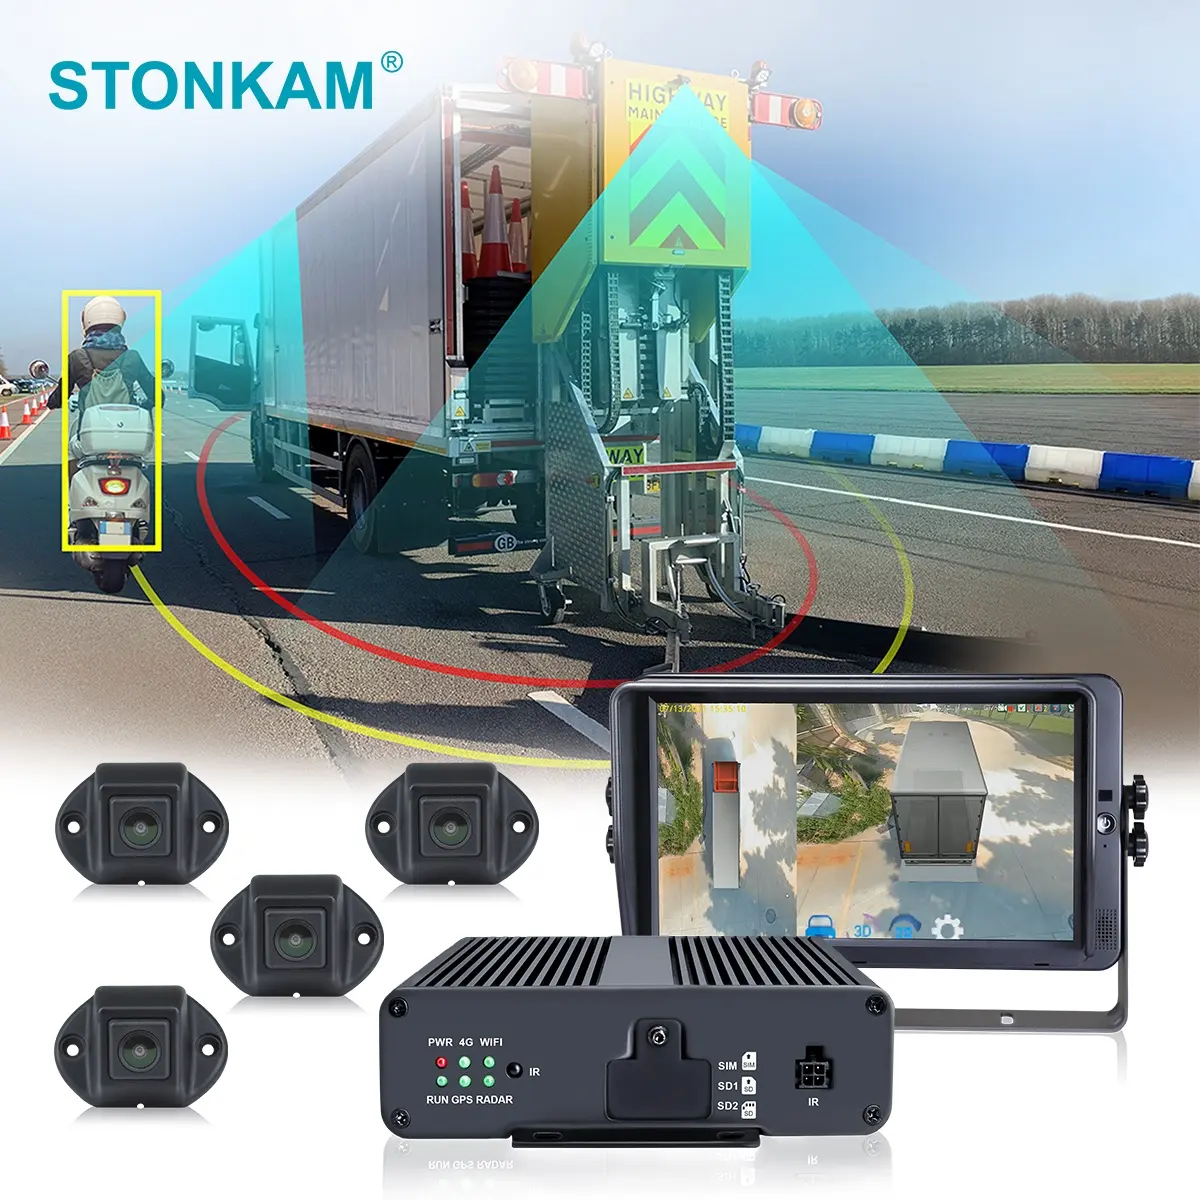 STONKAM 3D HD 360 degrés camion surround view voiture caméra système de surveillance camion robuste avec capteur de stationnement pour bus scolaire